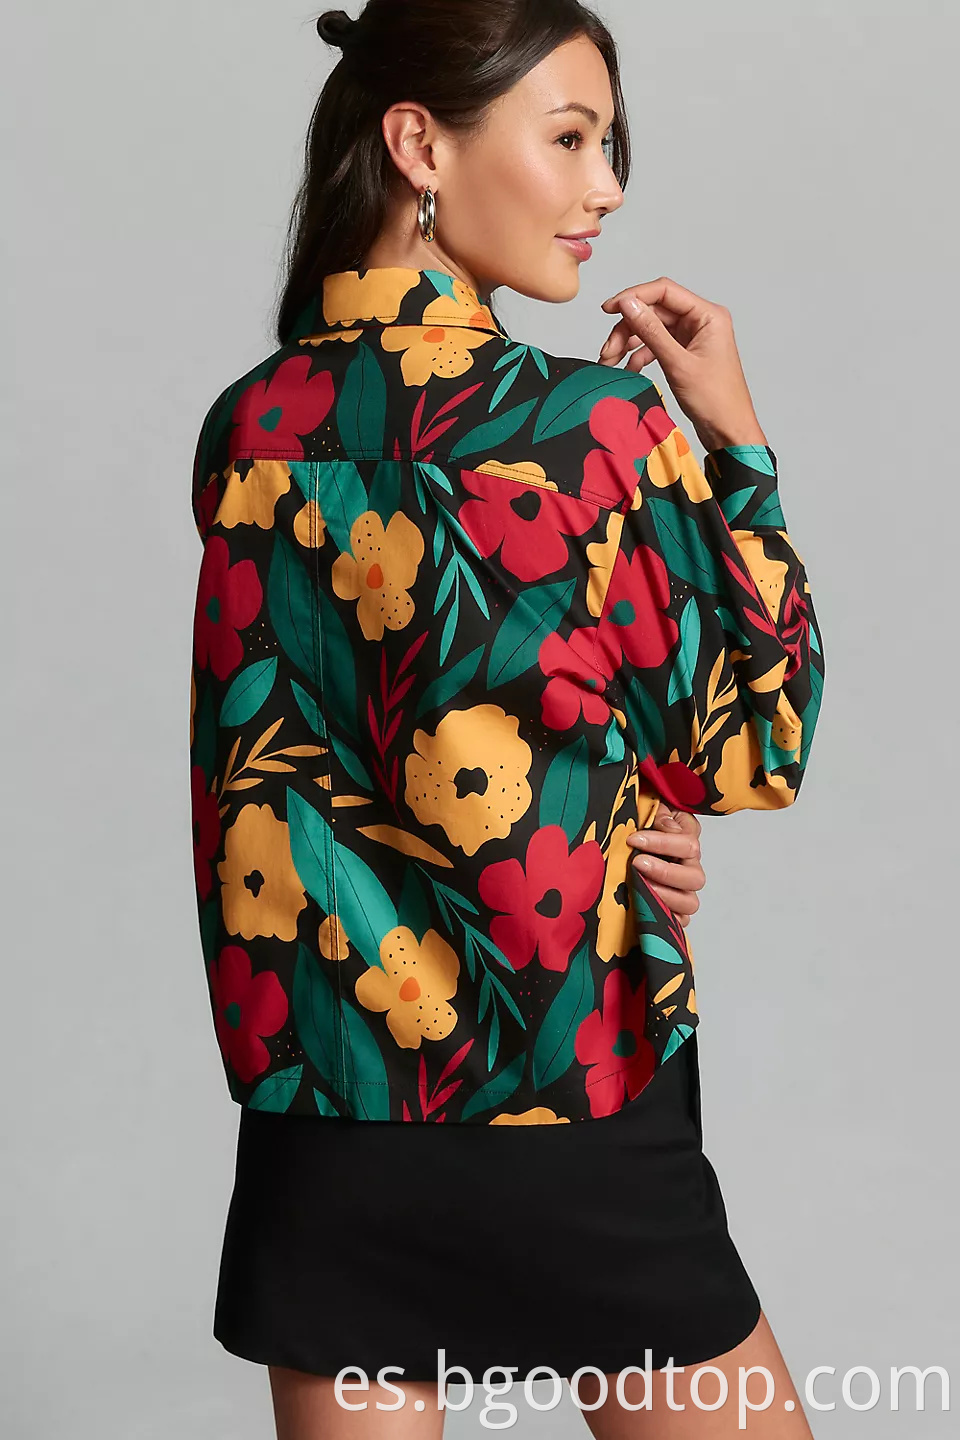 Women's floral jacket wholesale